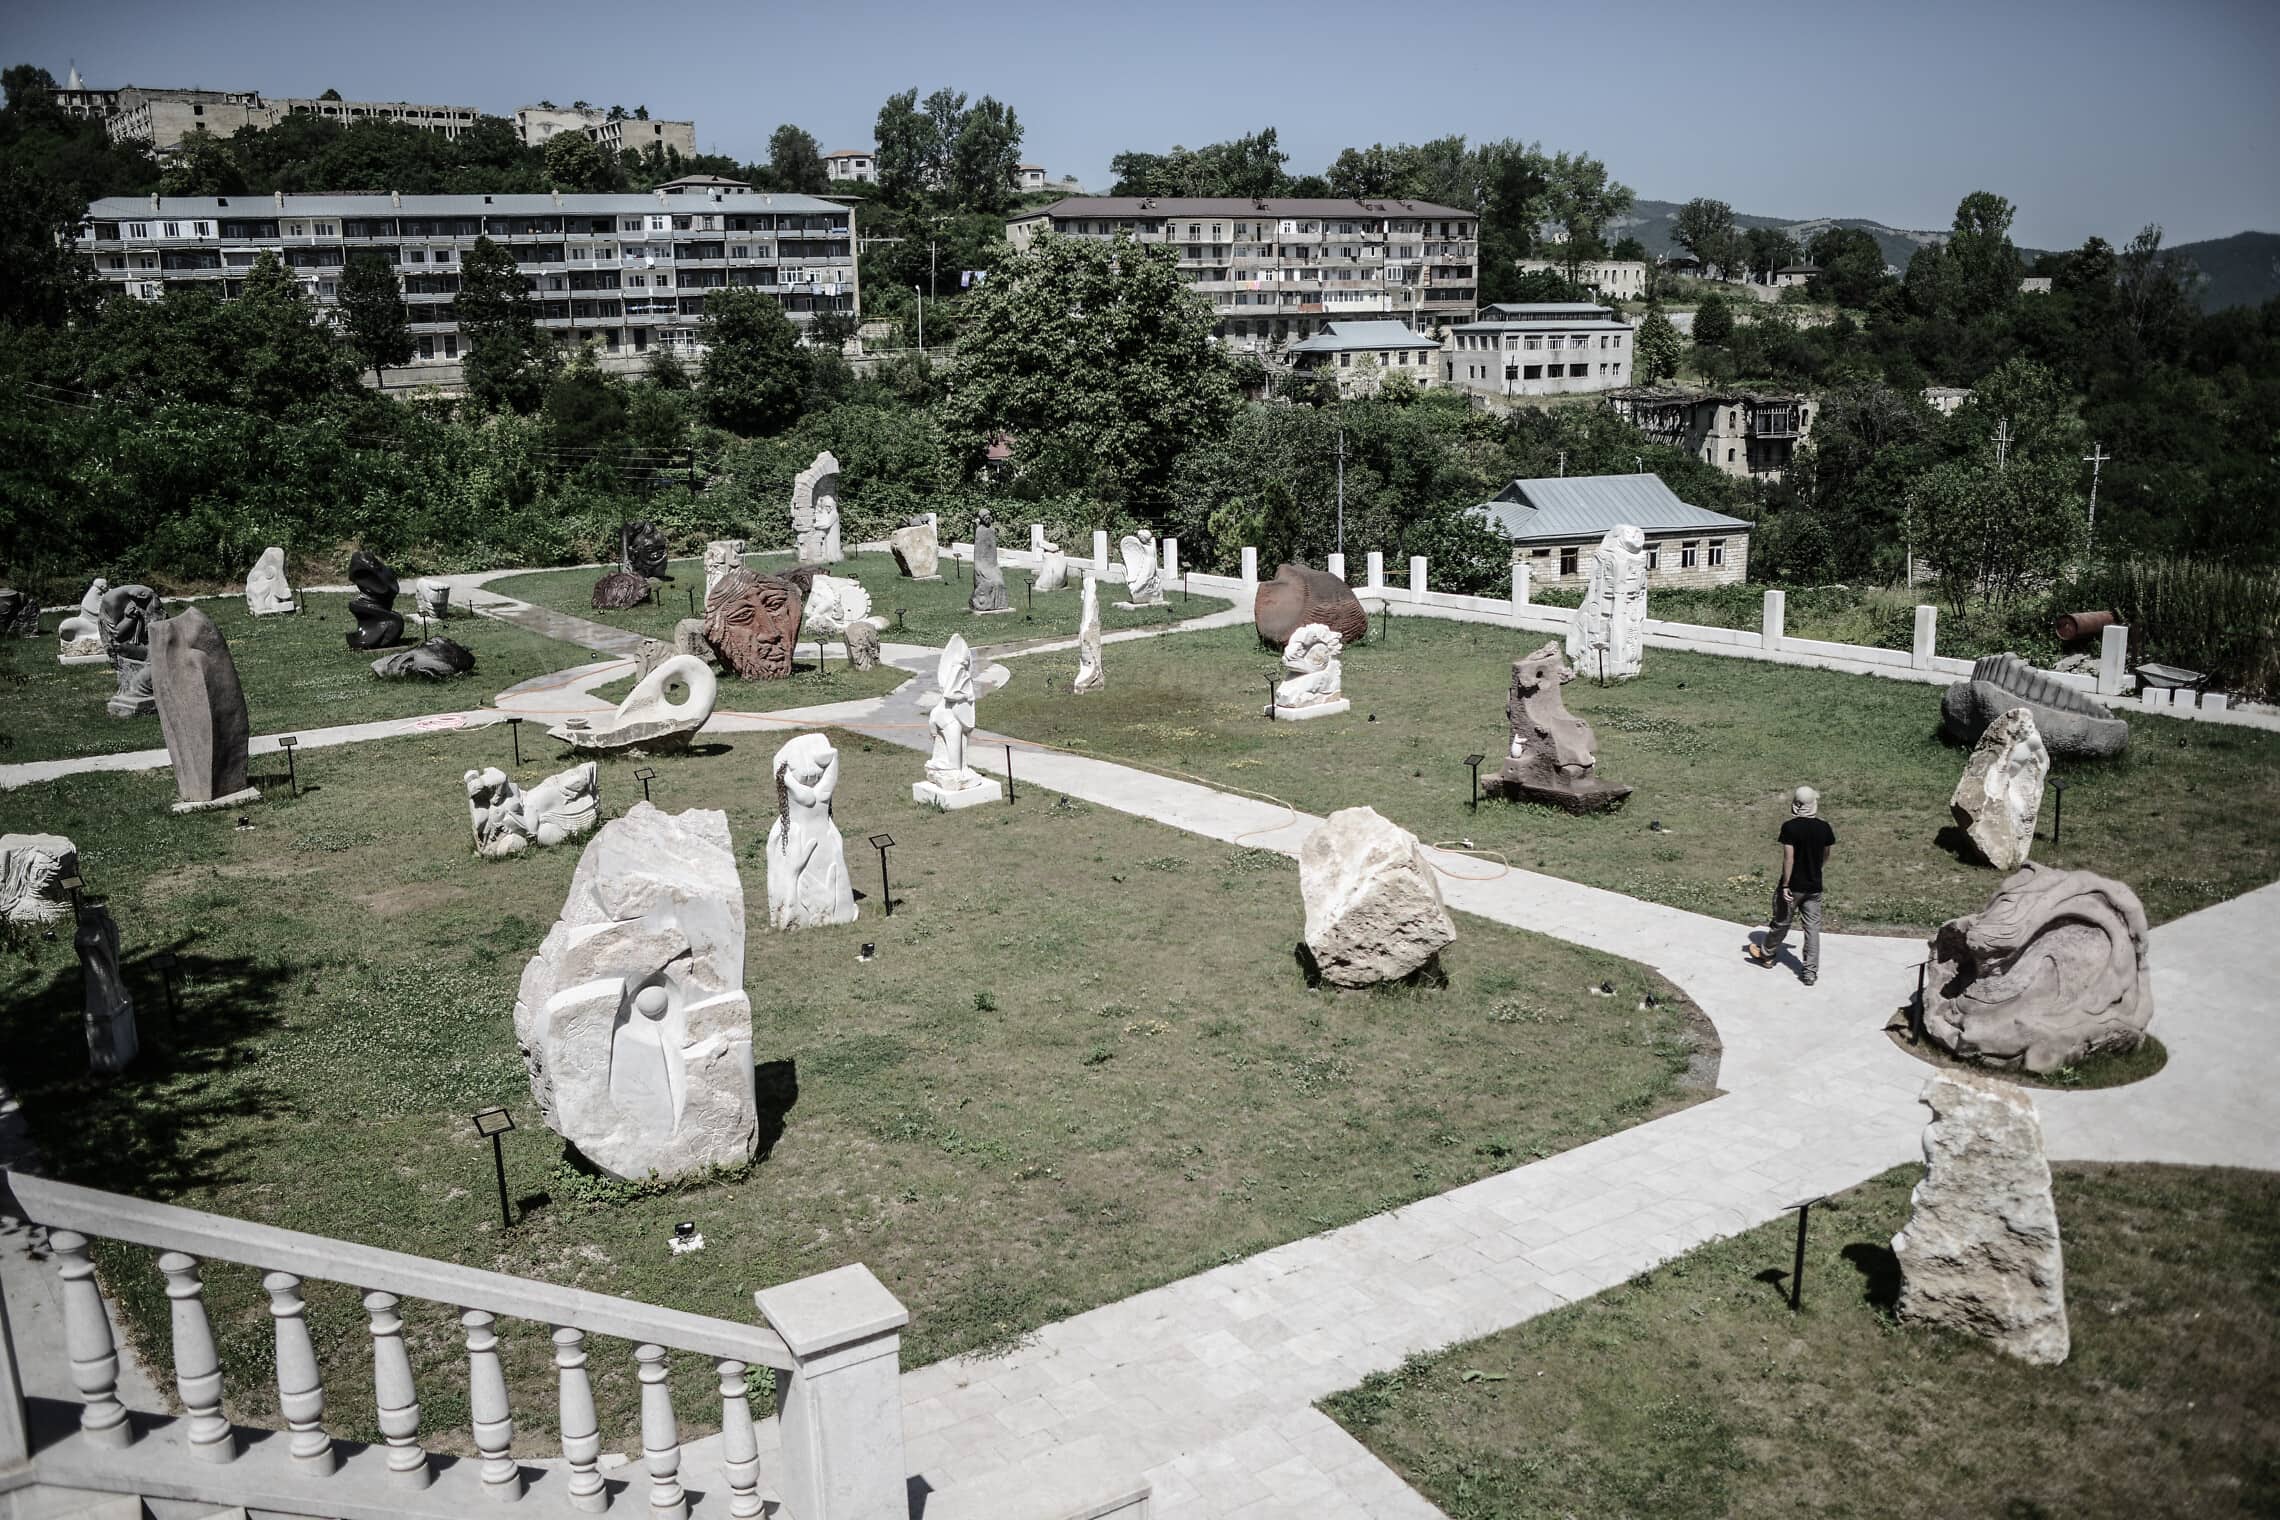 תערוכת הפסלים הבינלאומית בחצר המוזאון לאומנות בעיר שושה, על פי CHW התערוכה הוסרה על ידי ממשלת אזרבייג&#039;ן, לא ידוע מה עלה בגורל הפסלים. יולי 2018 (צילום: גילעד שדה)